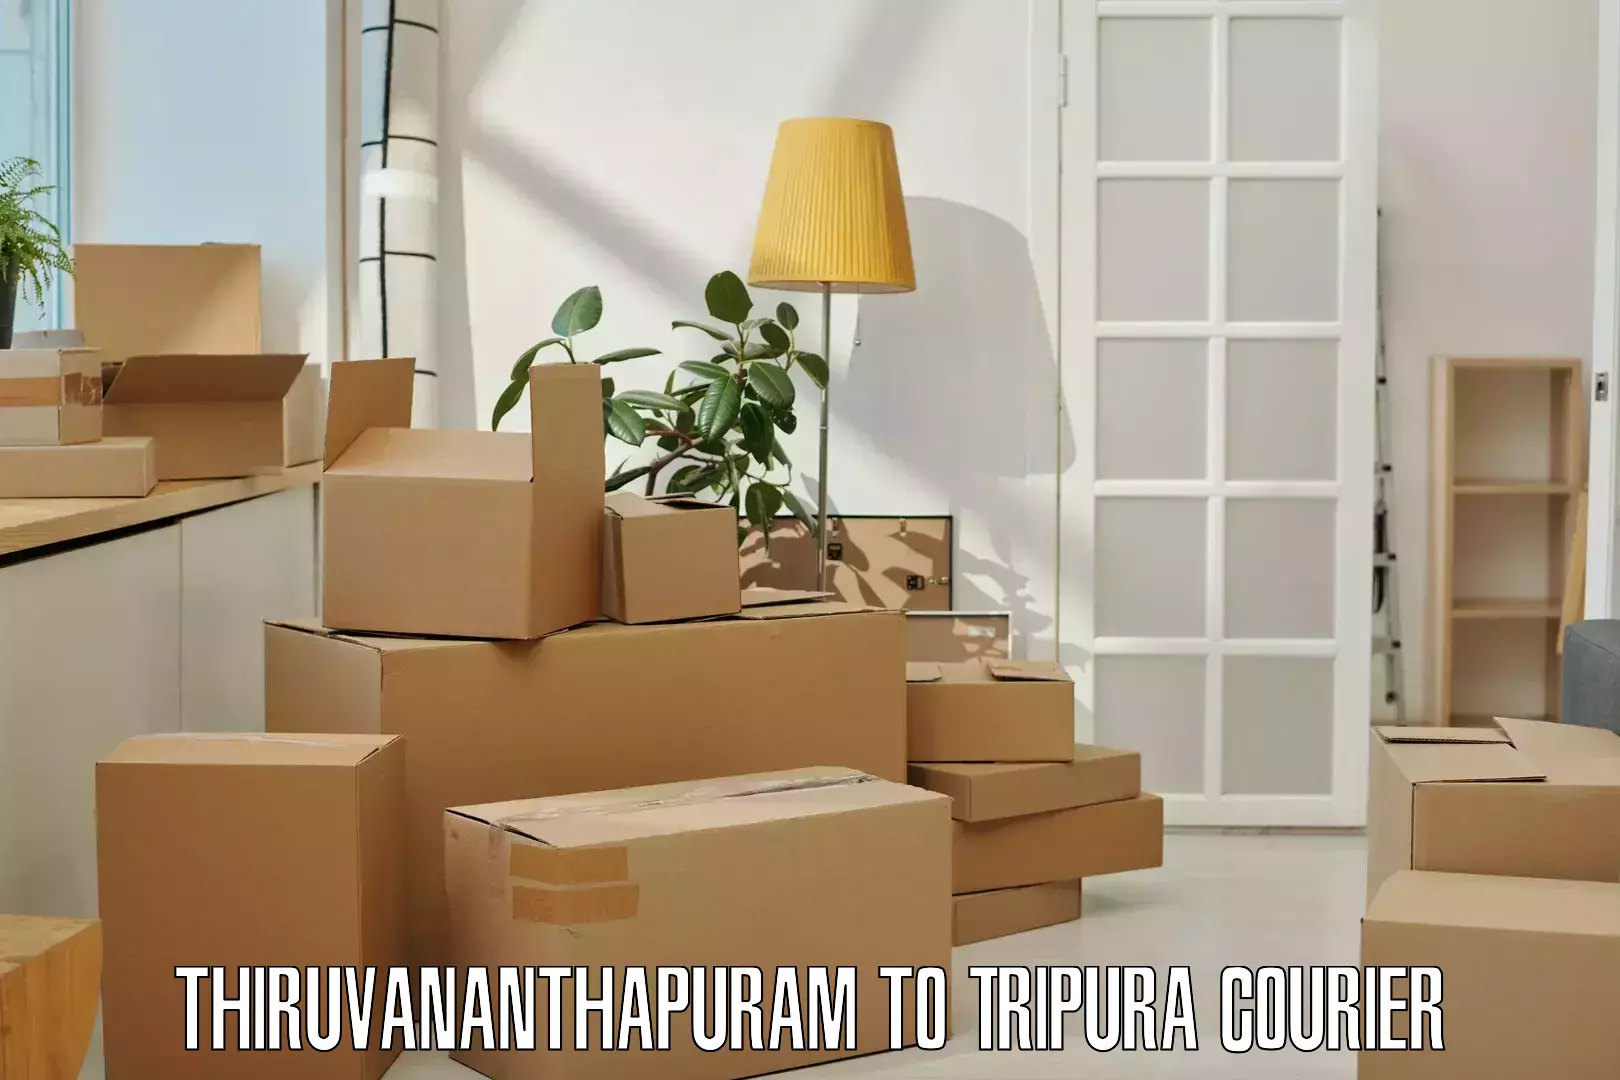 Efficient parcel transport in Thiruvananthapuram to Teliamura